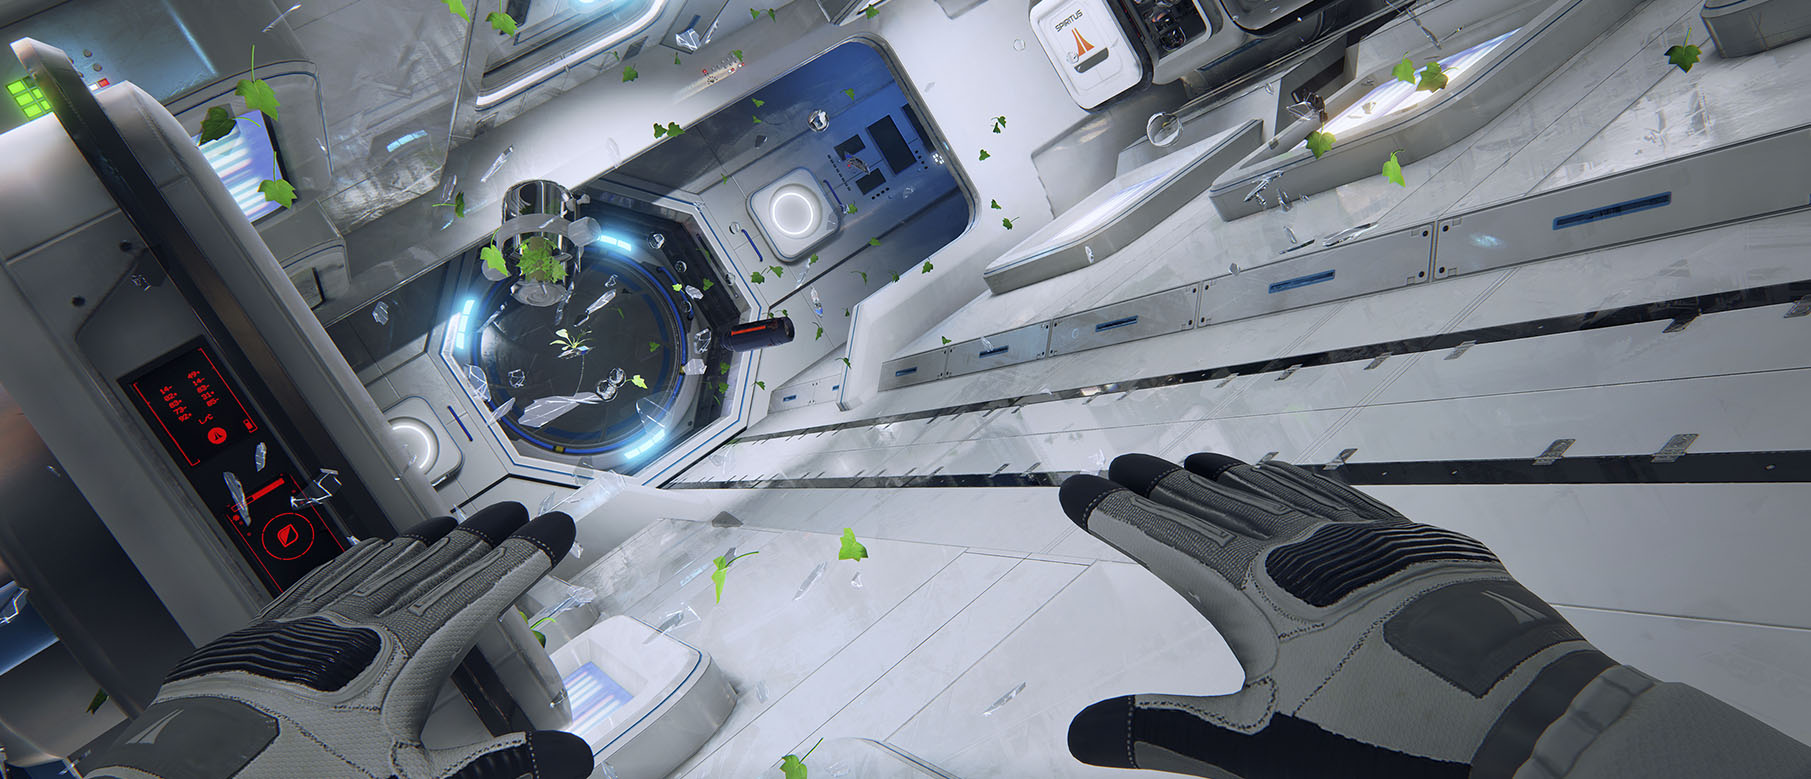 Изображение к Космический сурвайвал ADR1FT выйдет в Steam в 2016 году